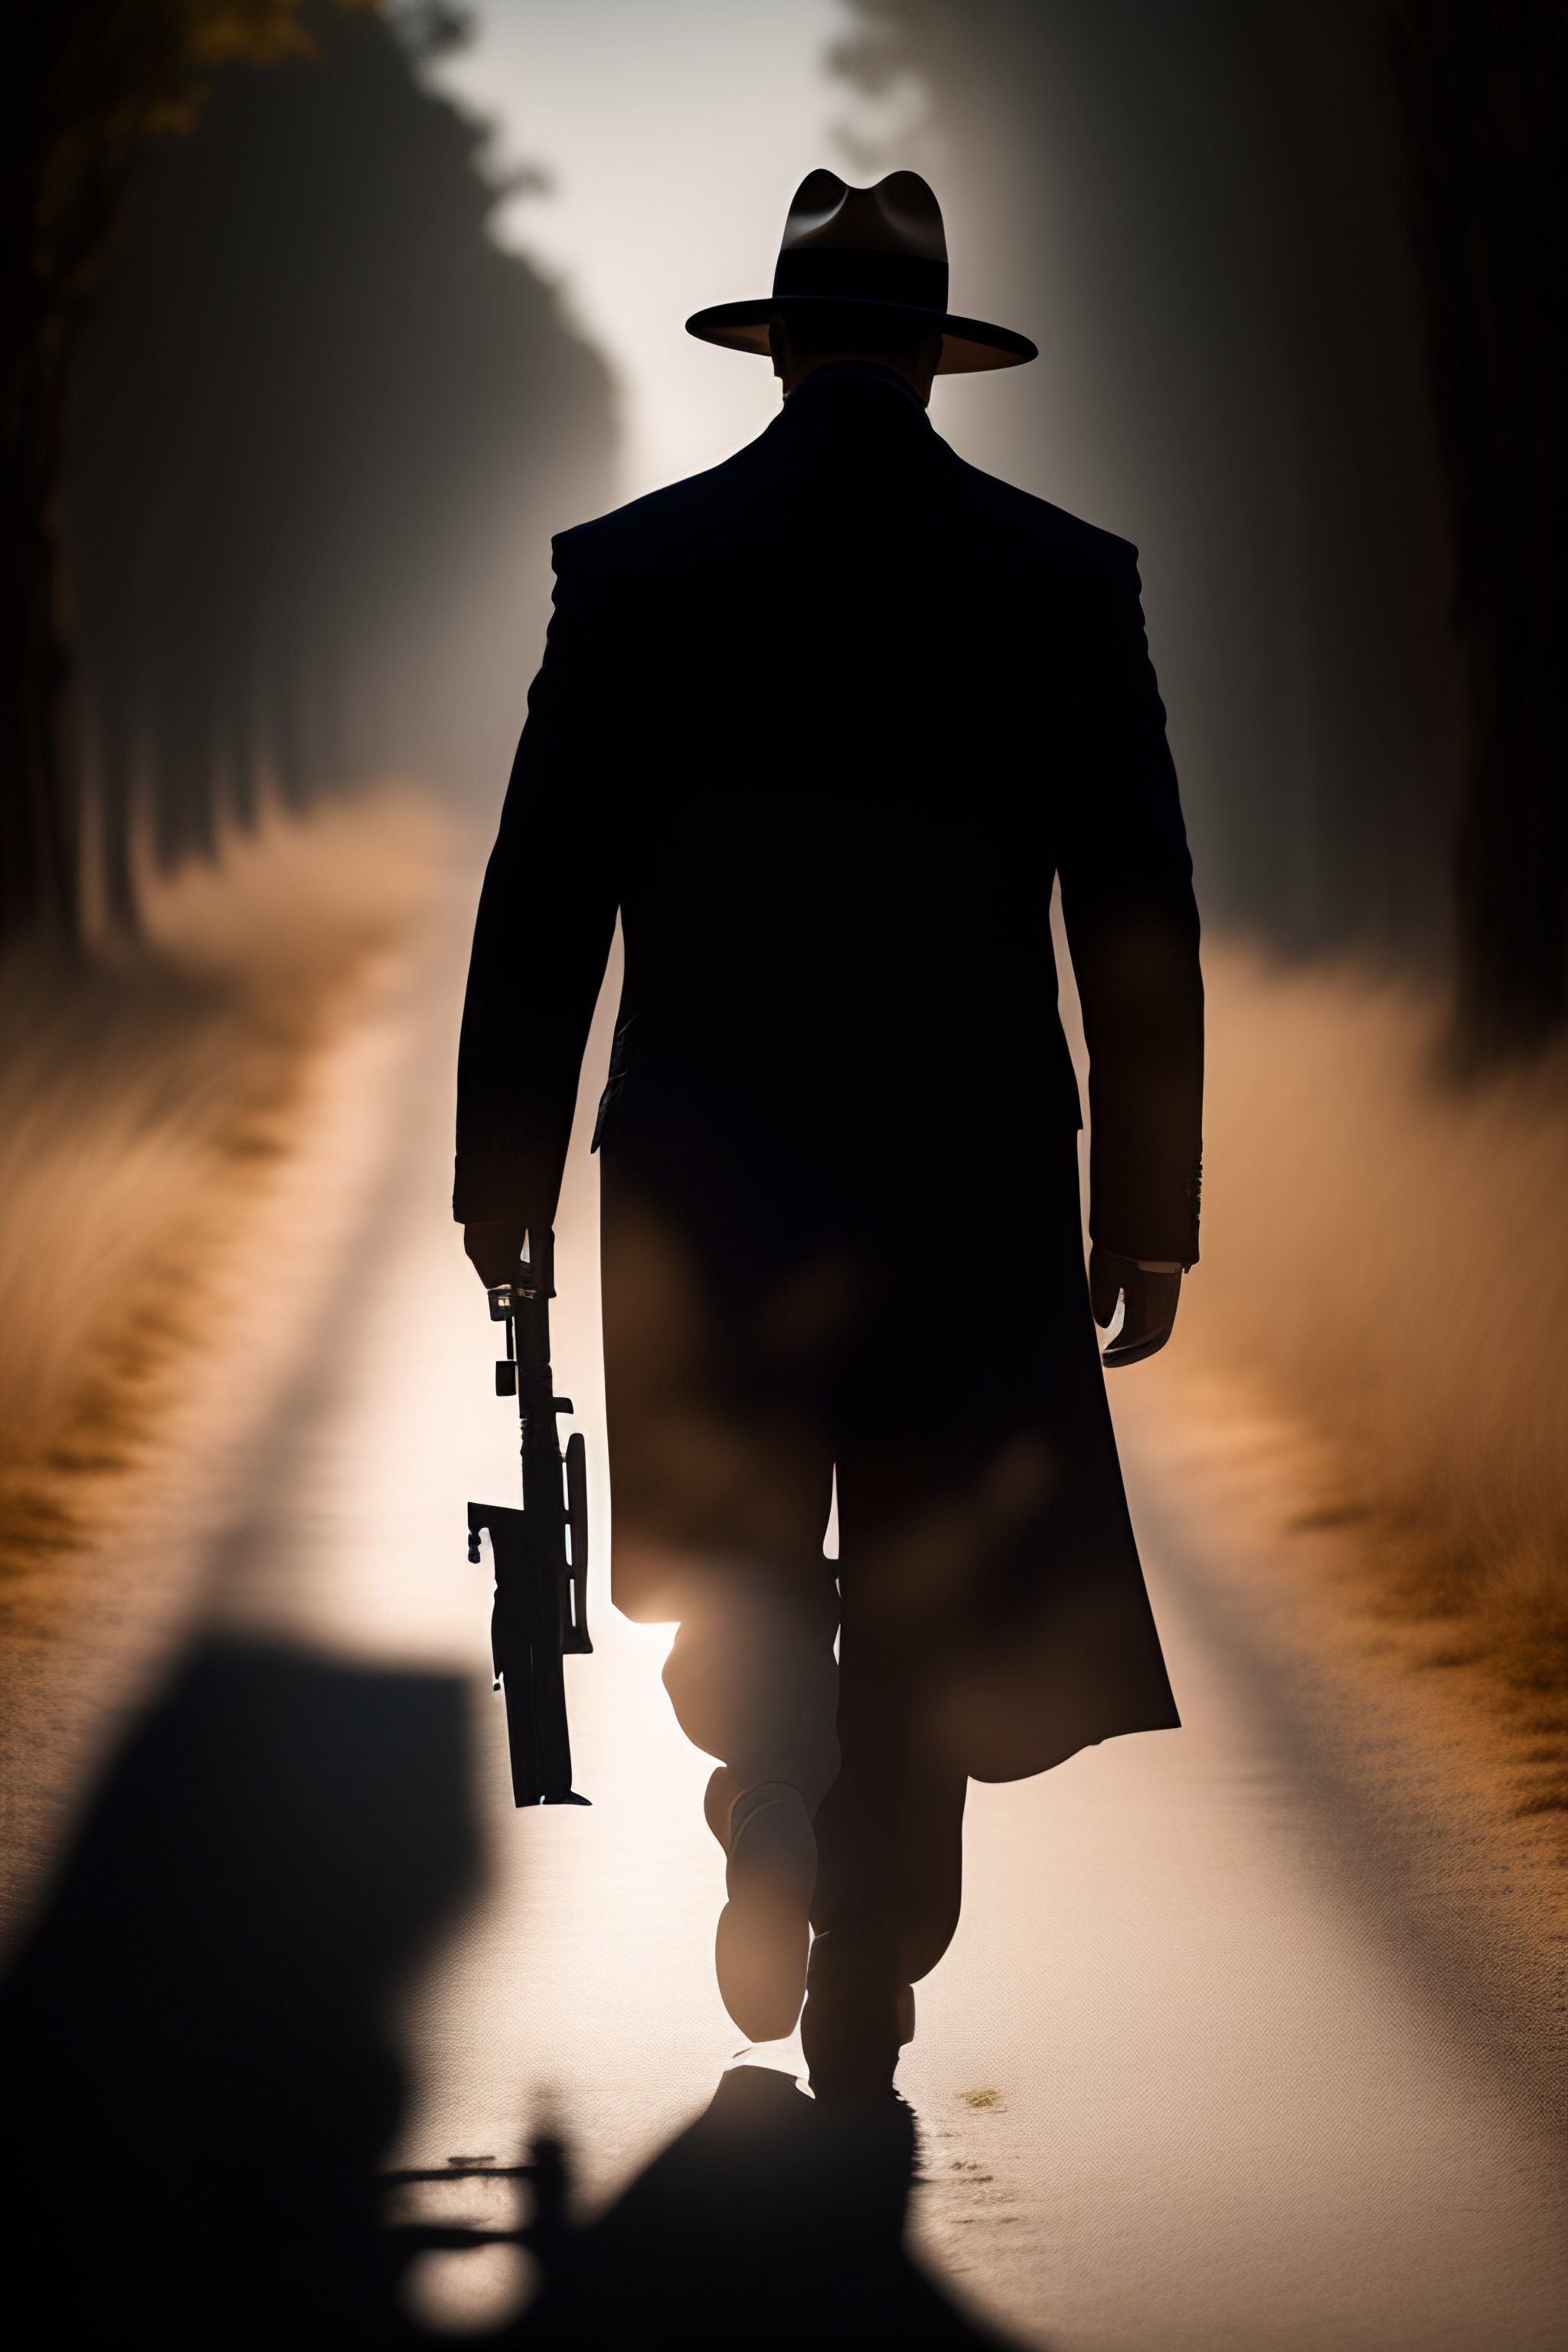 man walking with gun silhouette